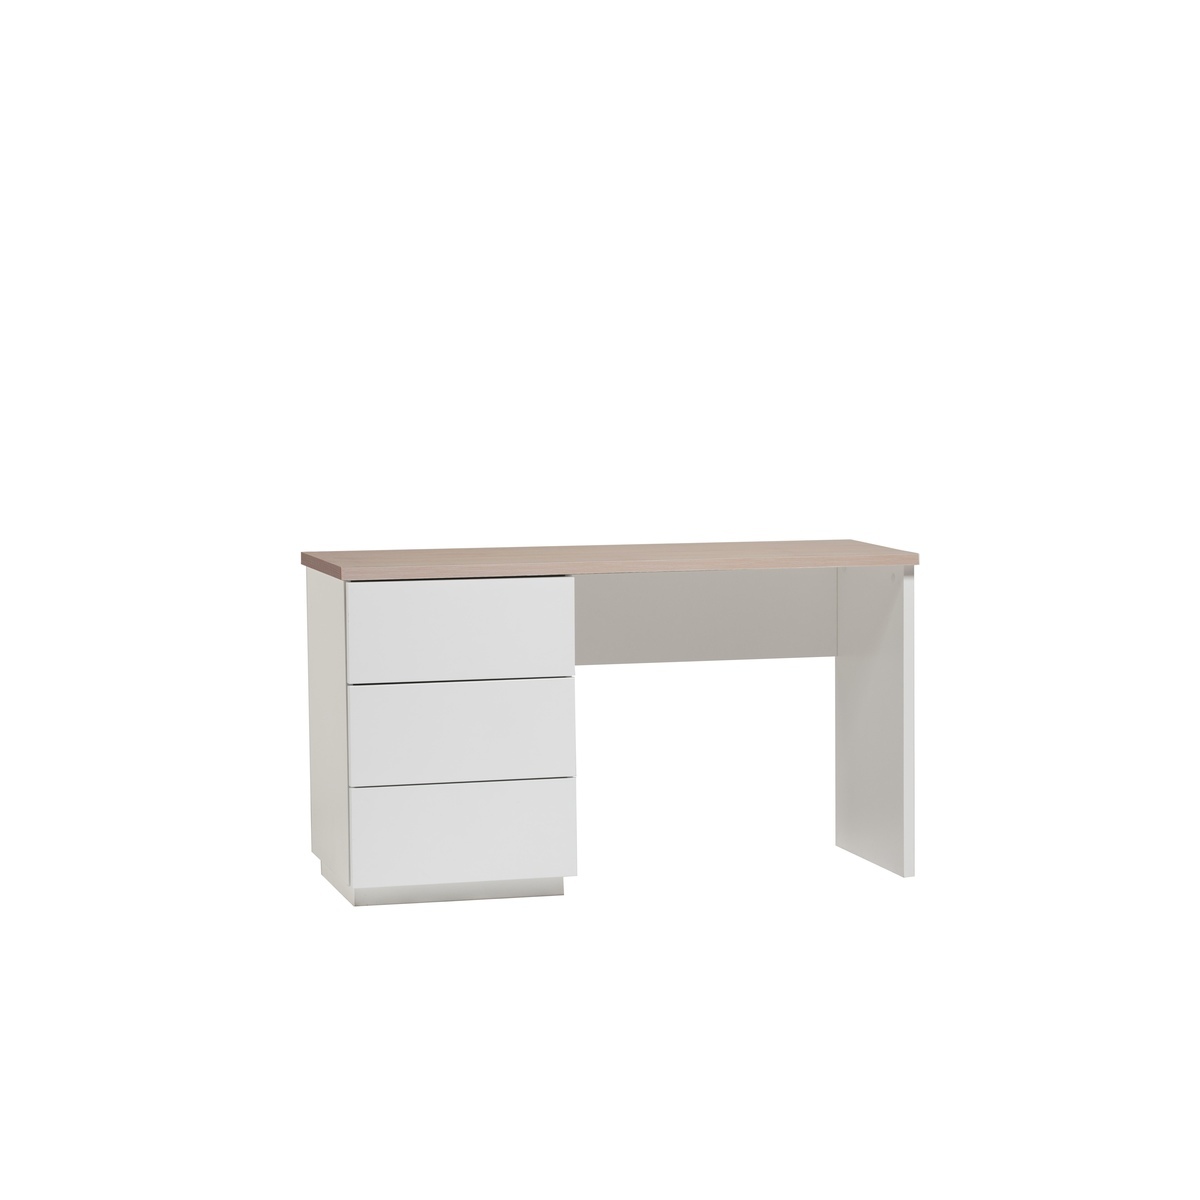 Anton työpöytä 130cm, laatikoilla, valkoinen/tammi